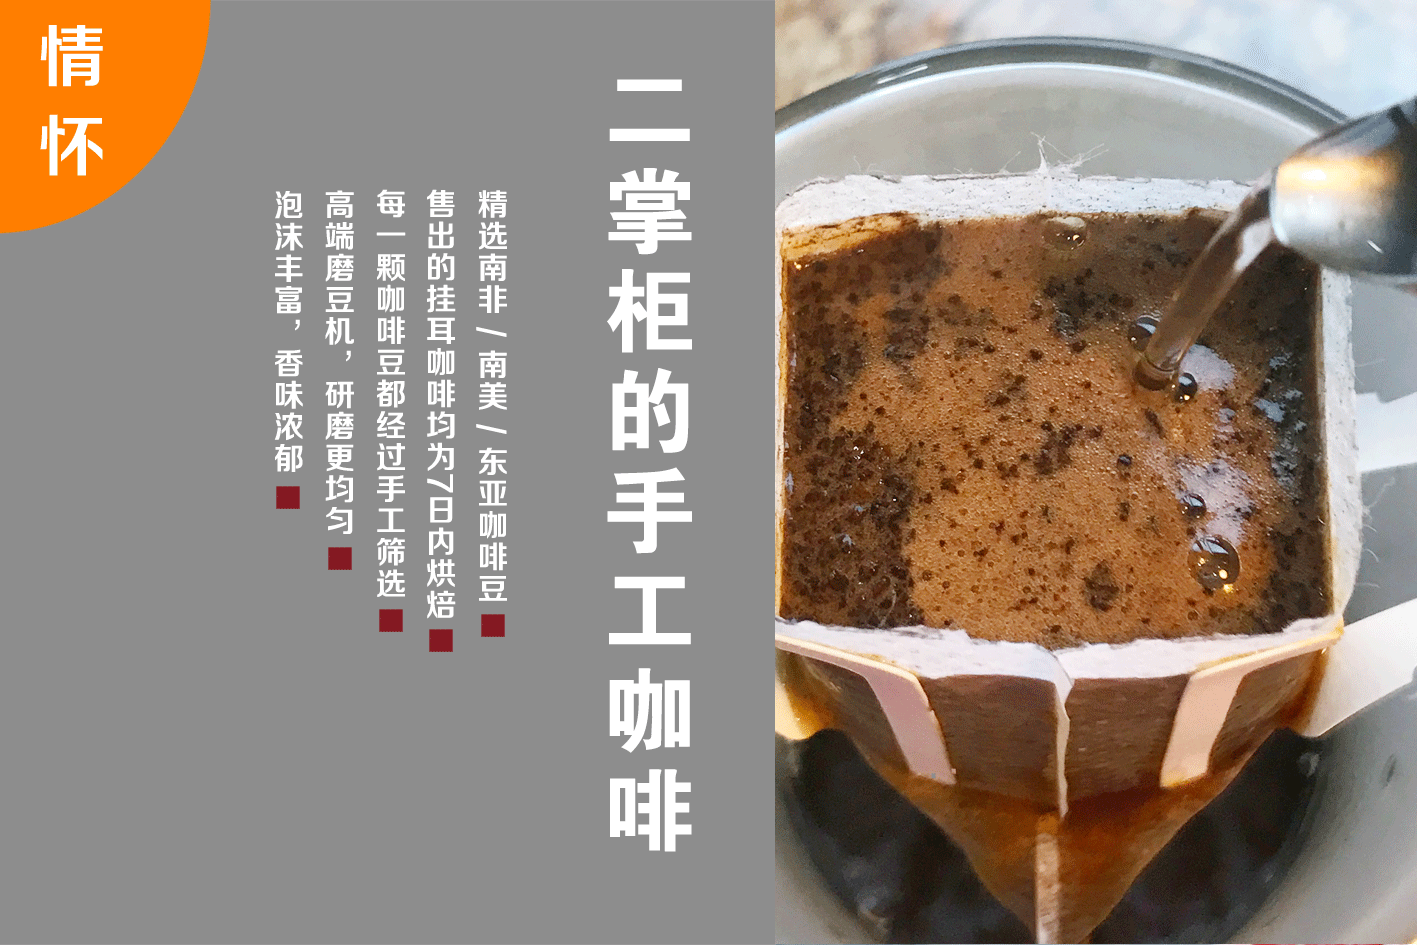 【现货发售】二掌柜的逼格咖啡 | 手工烘培研磨挂耳咖啡 ,纯美式黑咖